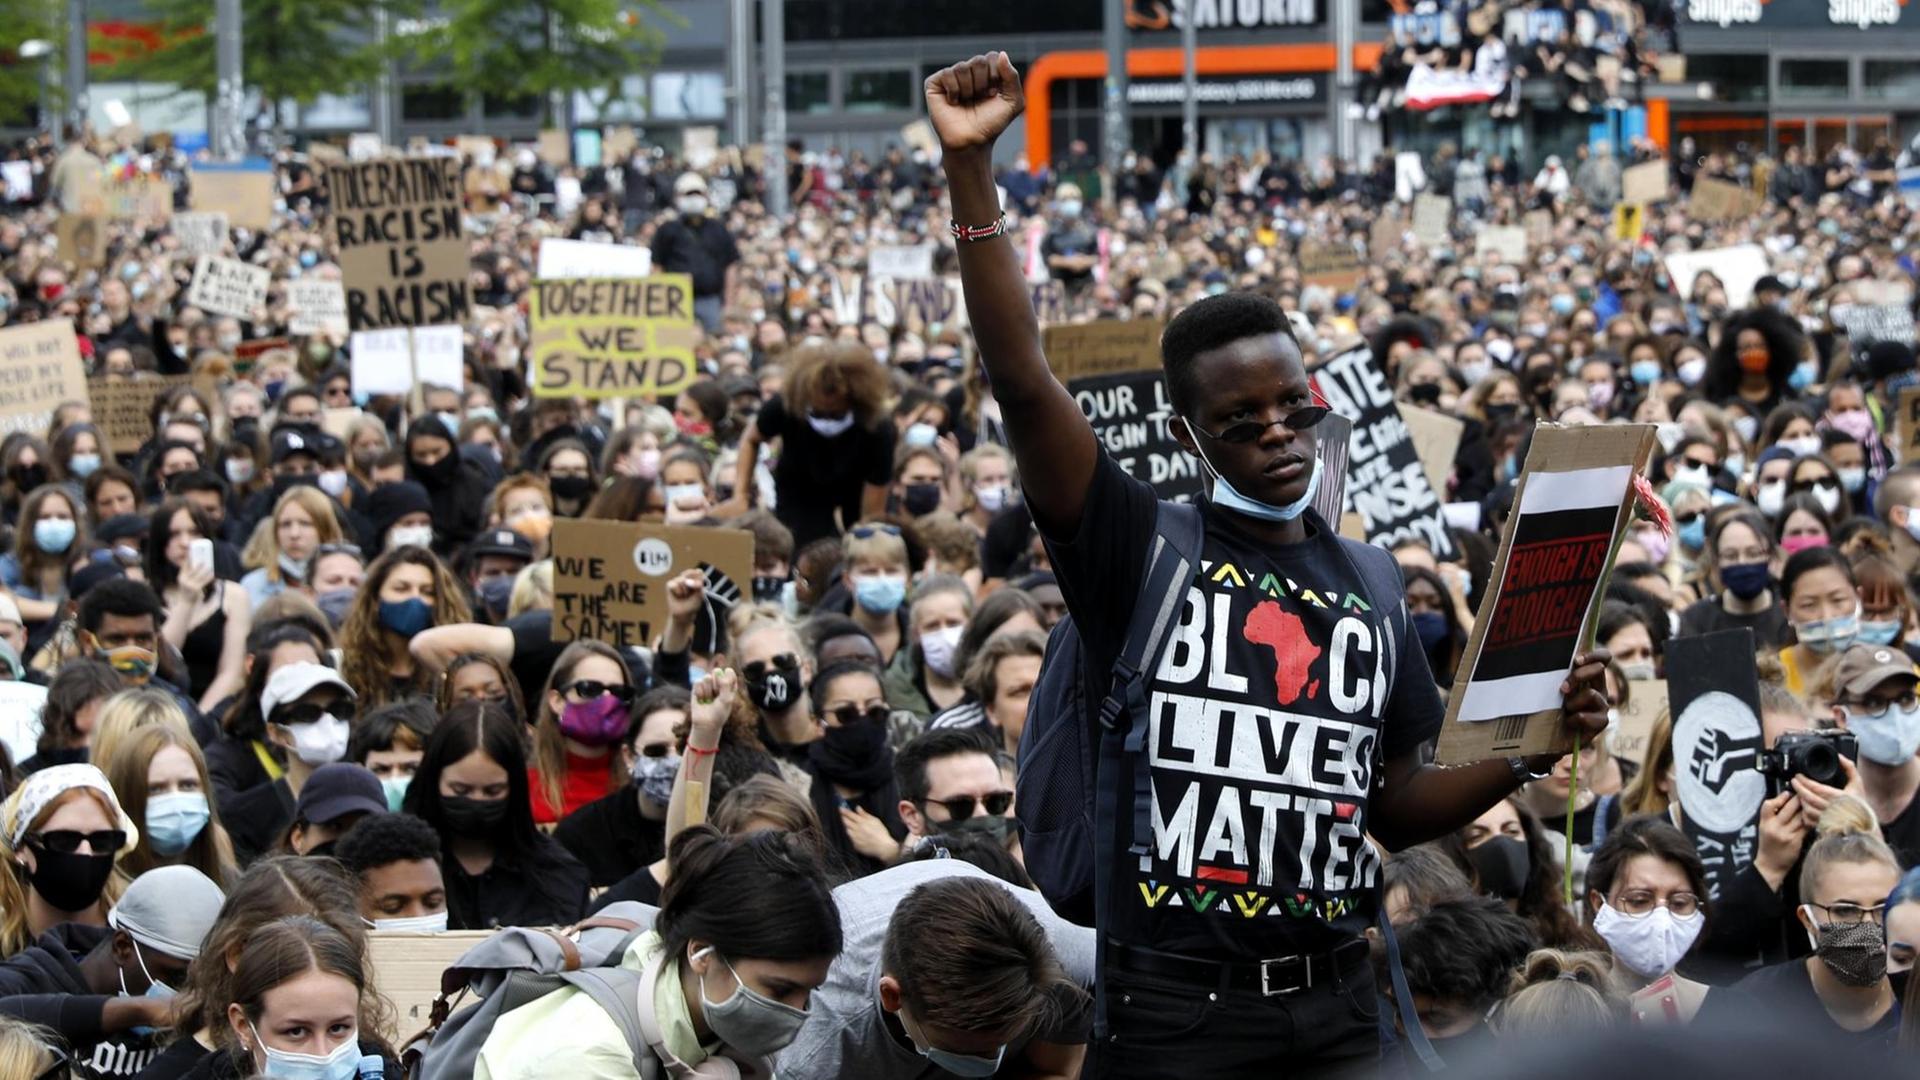 Vor einer großen sitzenden Menschenmenge mit Gesichtsmasken steht ein Schwarzer mit erhobener Faust. Auf seinem T-Shirt steht in bunten Buchstaben "Black Lives Matter".